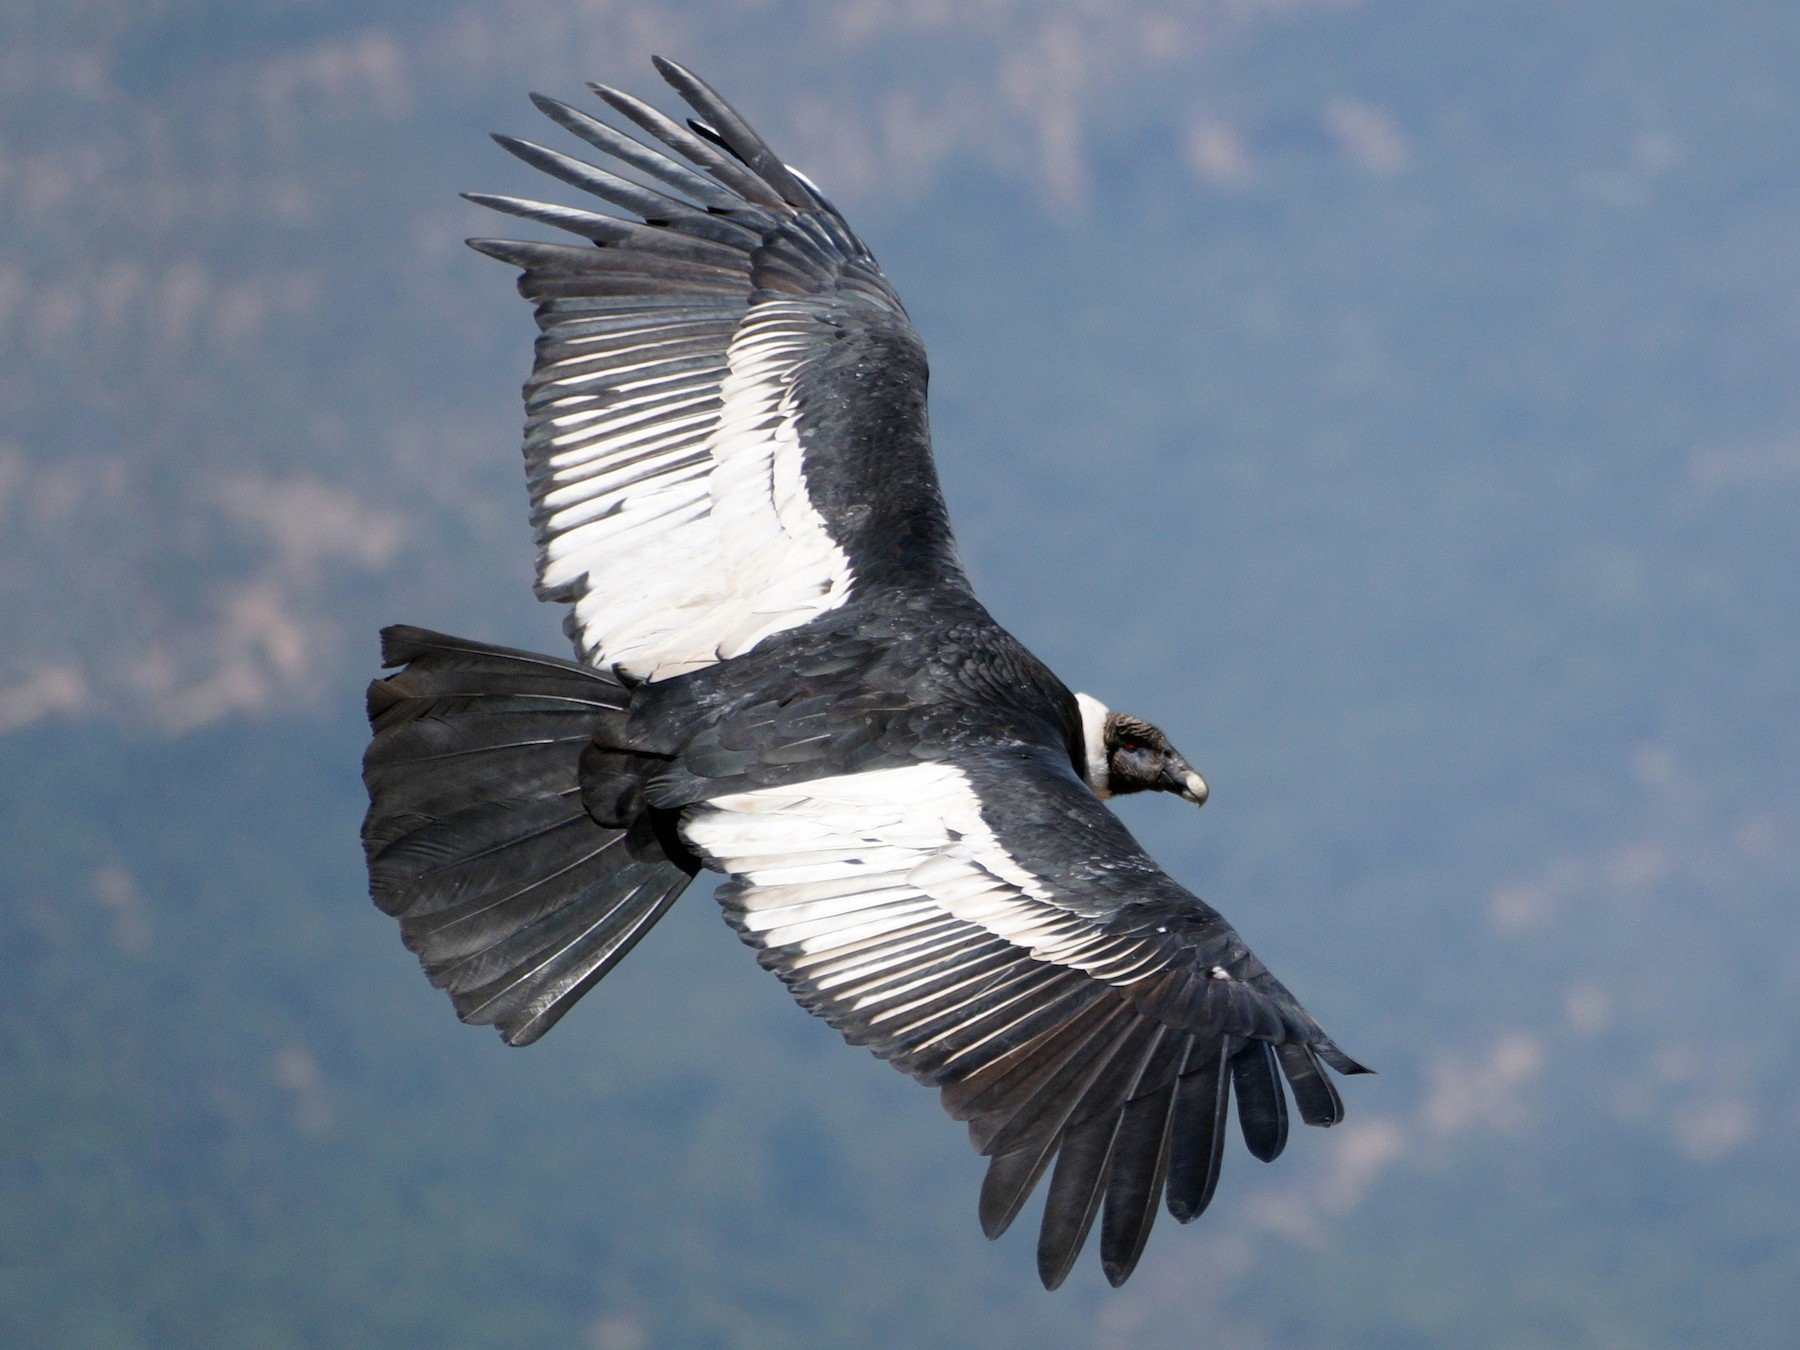 Thần ưng Andes chỉ có khoảng 1% thời gian bay chúng sẽ vỗ cánh